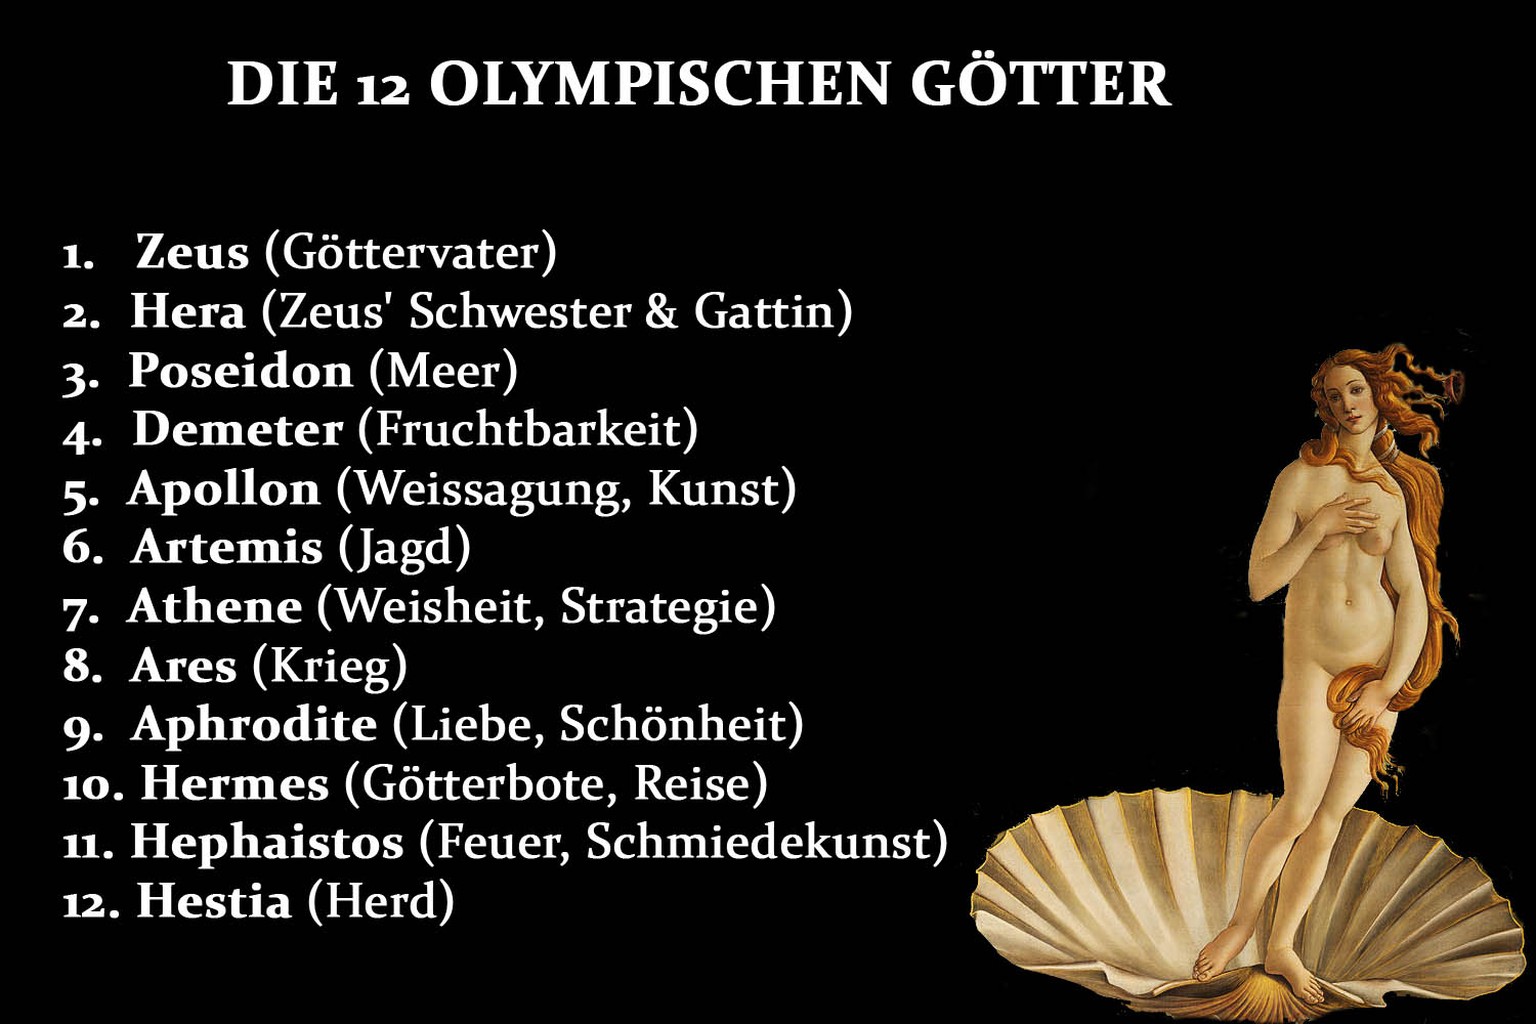 Die 12 olympischen Götter nach der griechischen Mythologie.